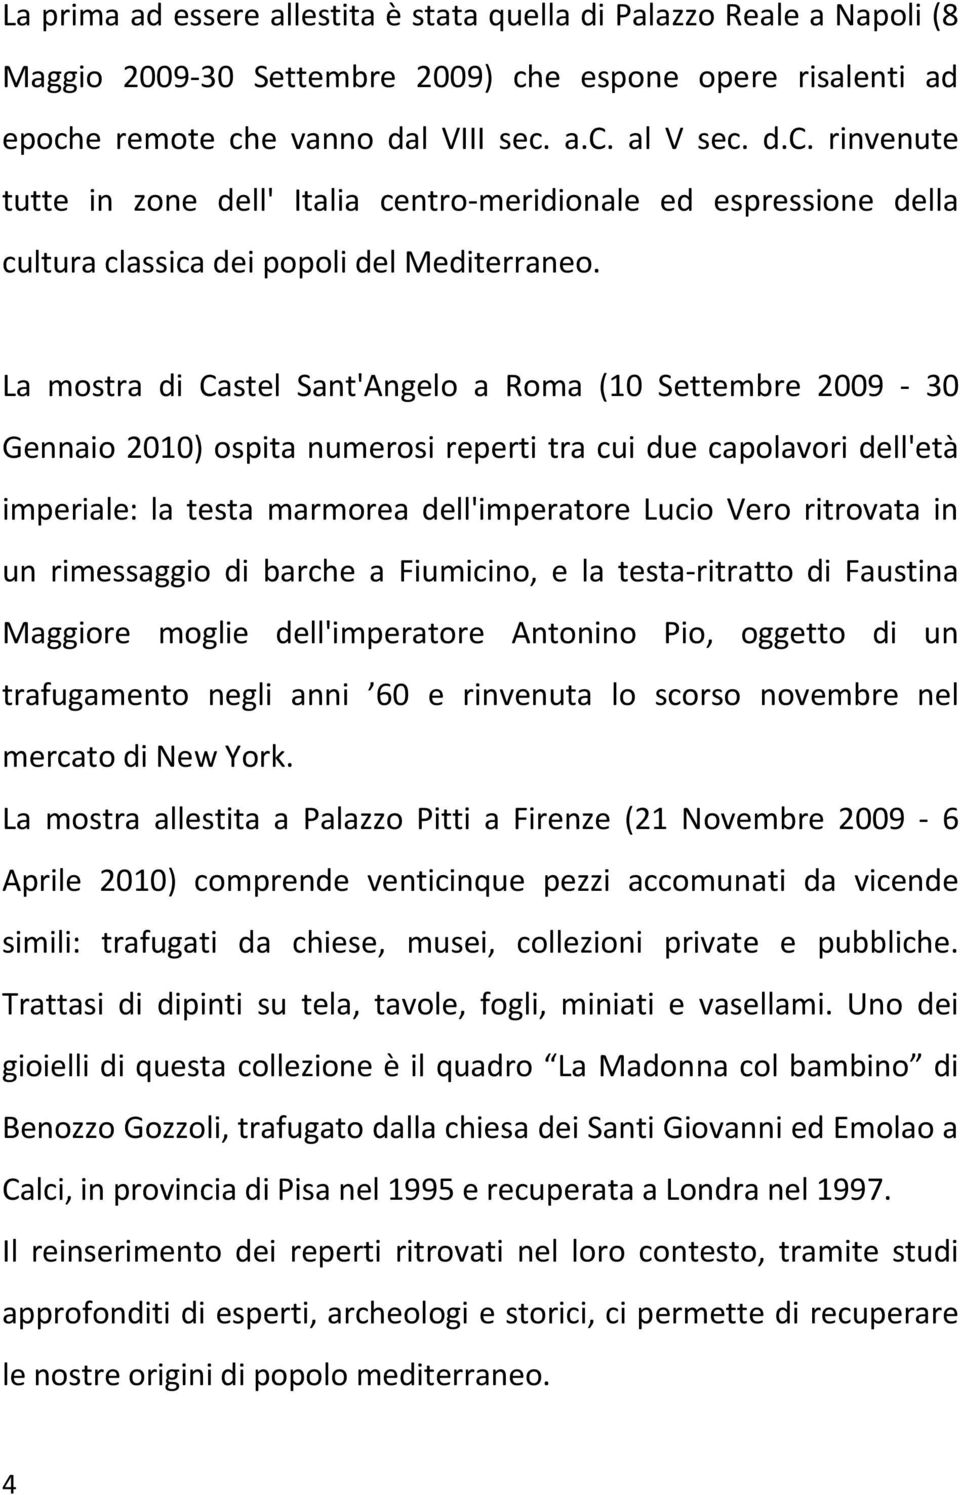 La mostra di Castel Sant'Angelo a Roma (10 Settembre 2009-30 Gennaio 2010) ospita numerosi reperti tra cui due capolavori dell'età imperiale: la testa marmorea dell'imperatore Lucio Vero ritrovata in